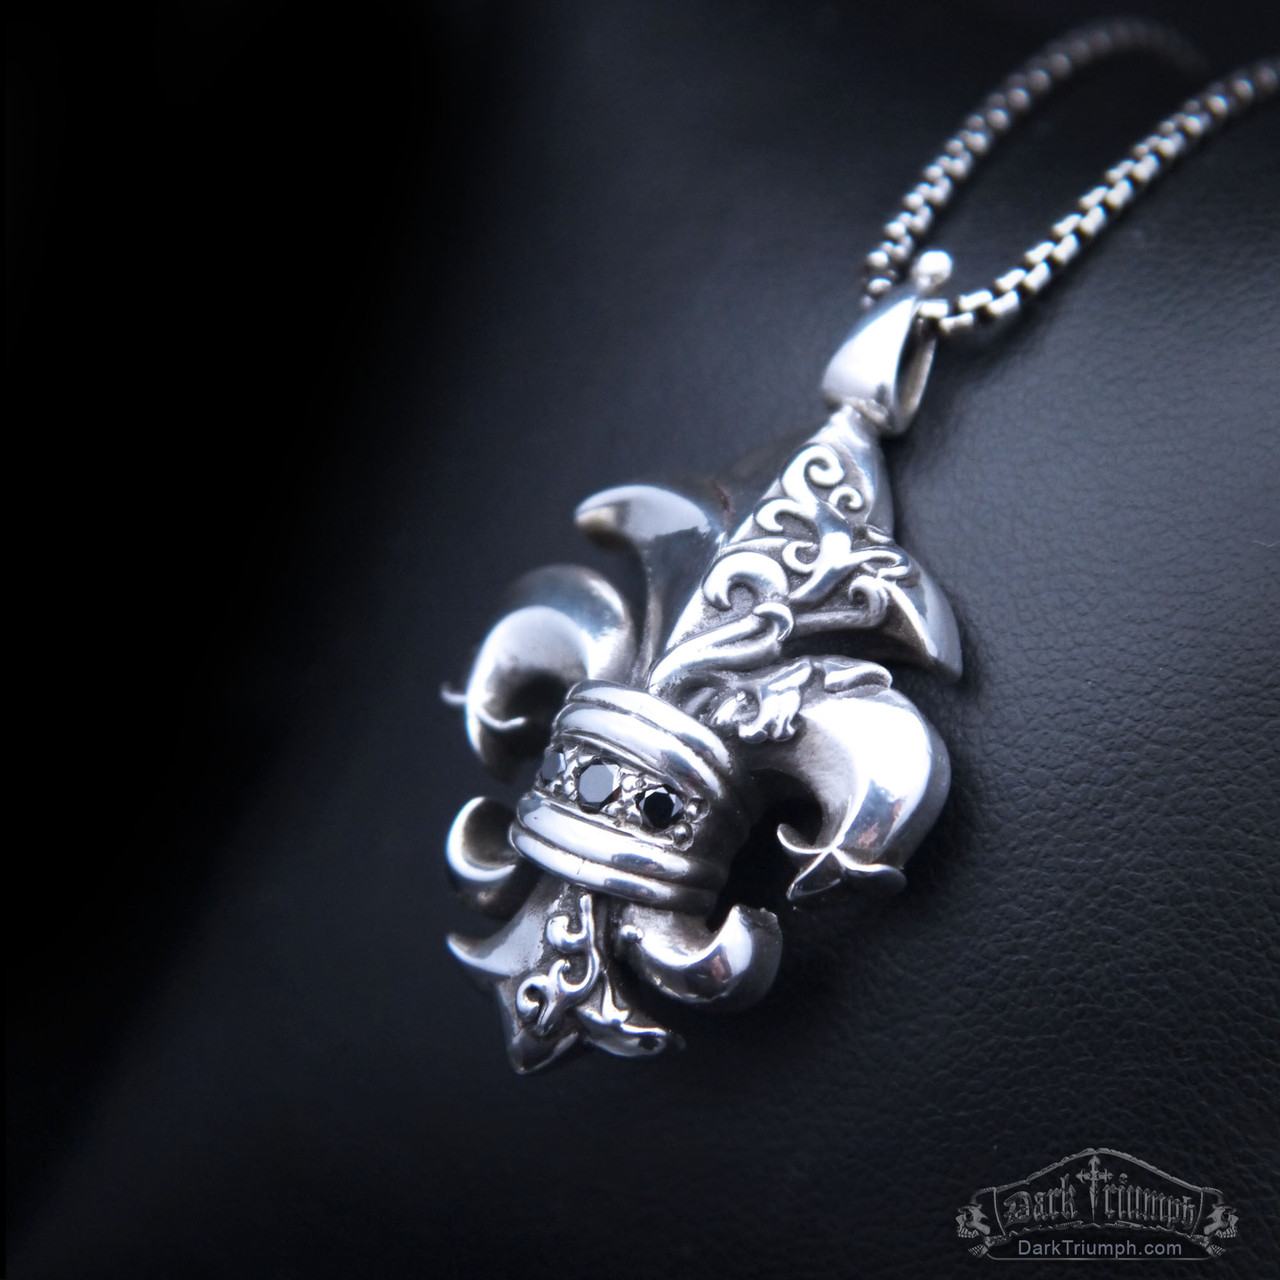 Sterling Silver Fleur-de-lis Lock Necklace